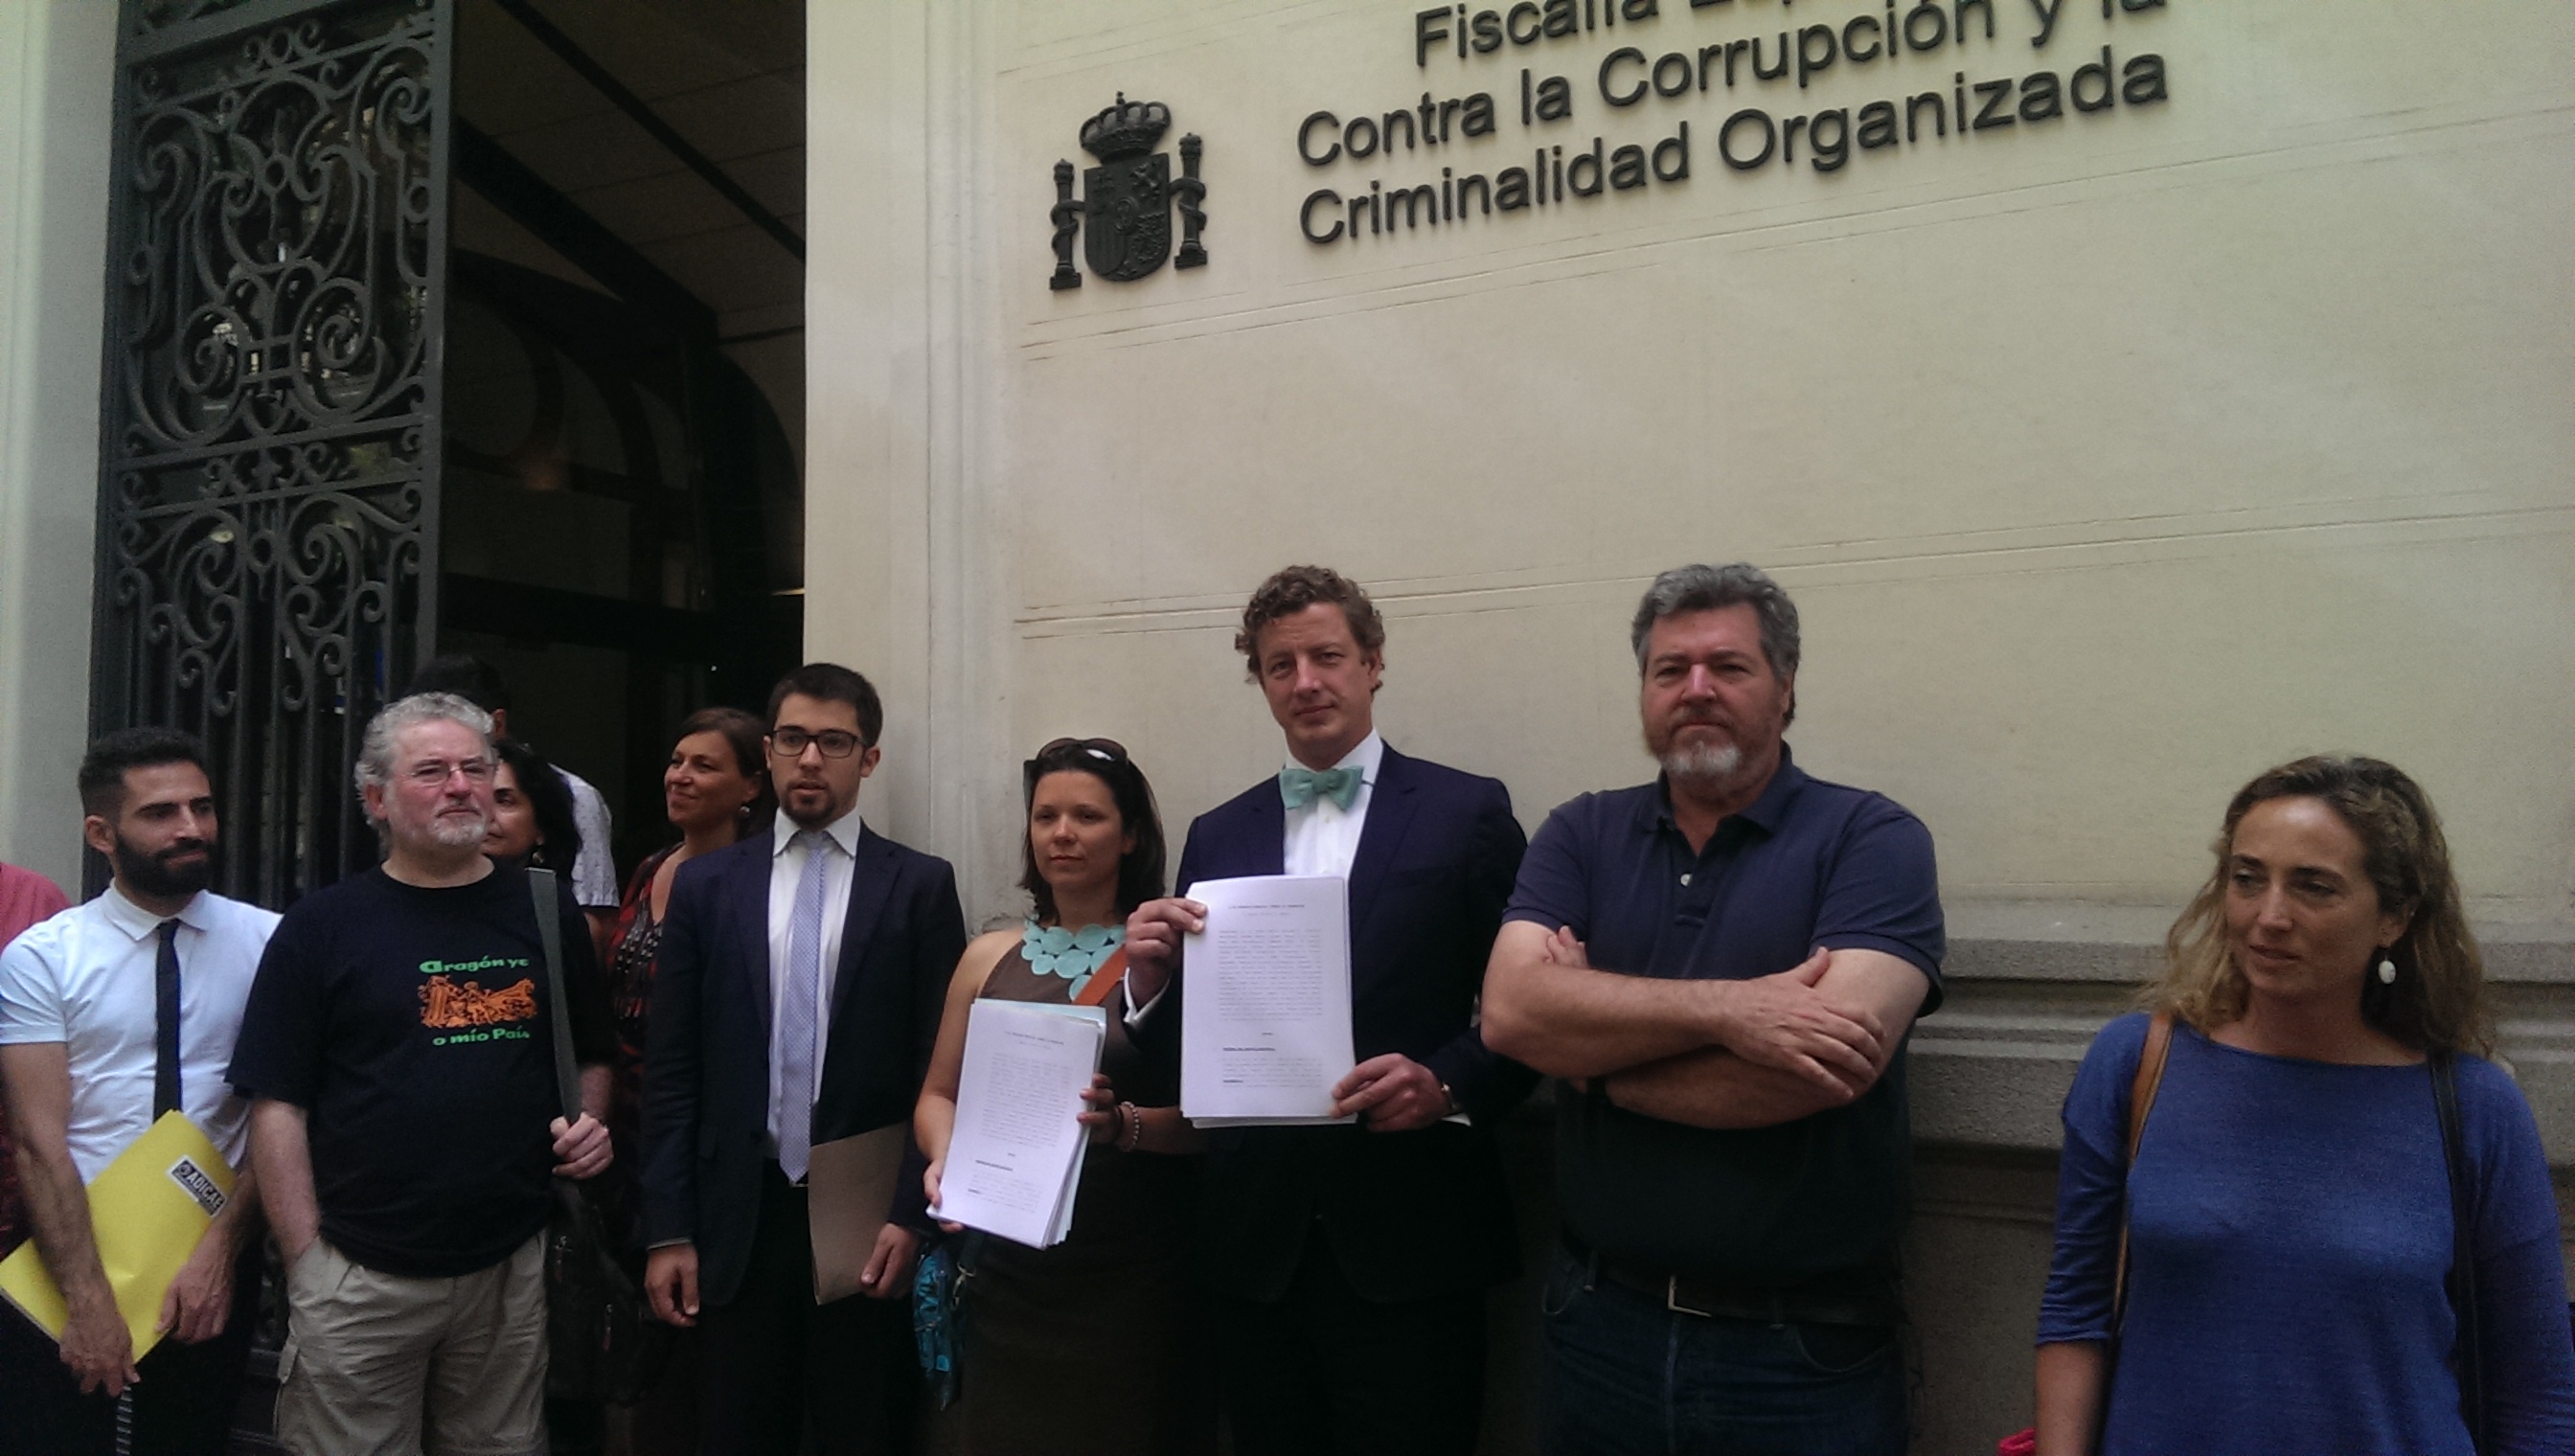 Los abogados de Holtrop junto a los firmantes posan con la denuncia en la Fiscalía Anticorrupción. FOTO: Ramón Roca.